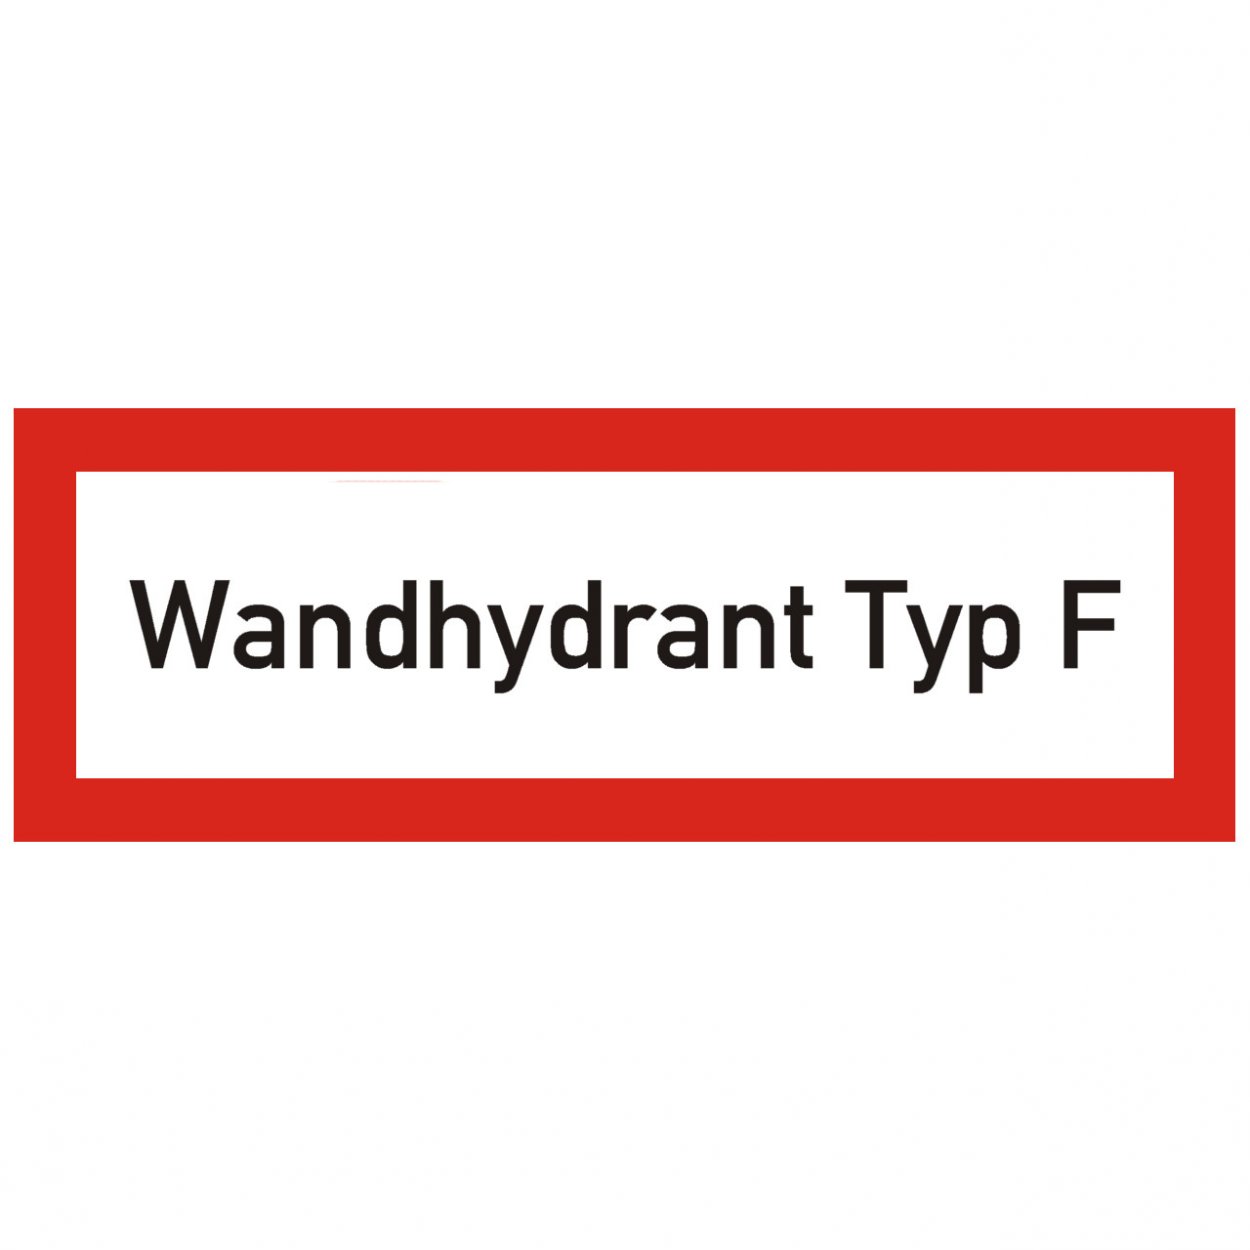 Aufkleber "Wandhydrant Typ F" nach DIN 14461 Brandschutzzeichen Schild 210x74mm